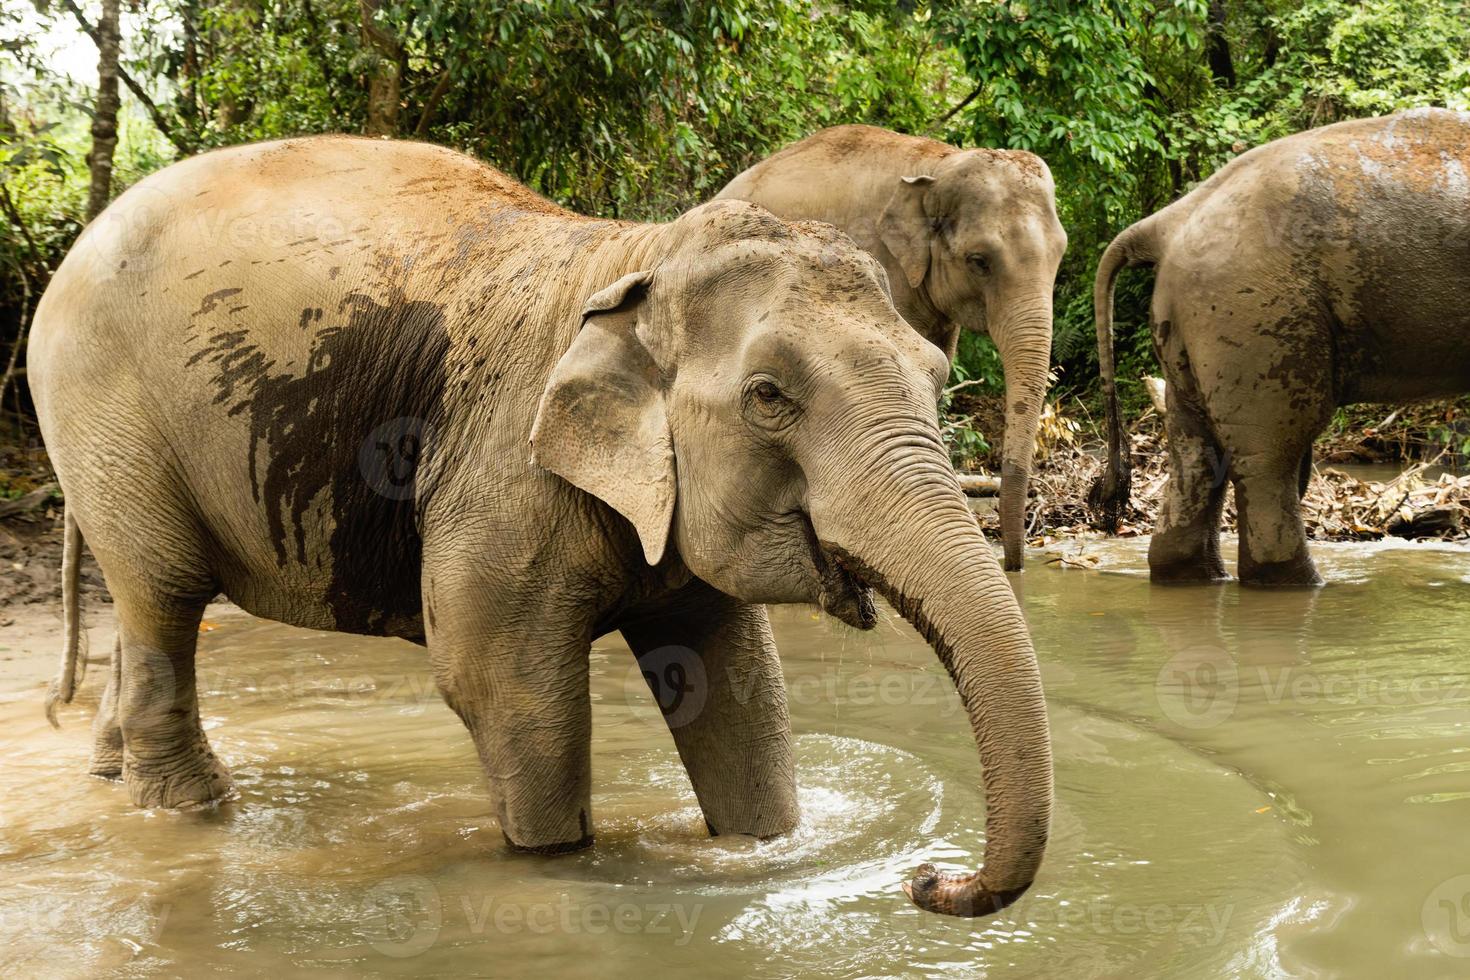 grupo de elefantes está tomando banho em uma lagoa na floresta tropical. província de chiang mai, tailândia. foto